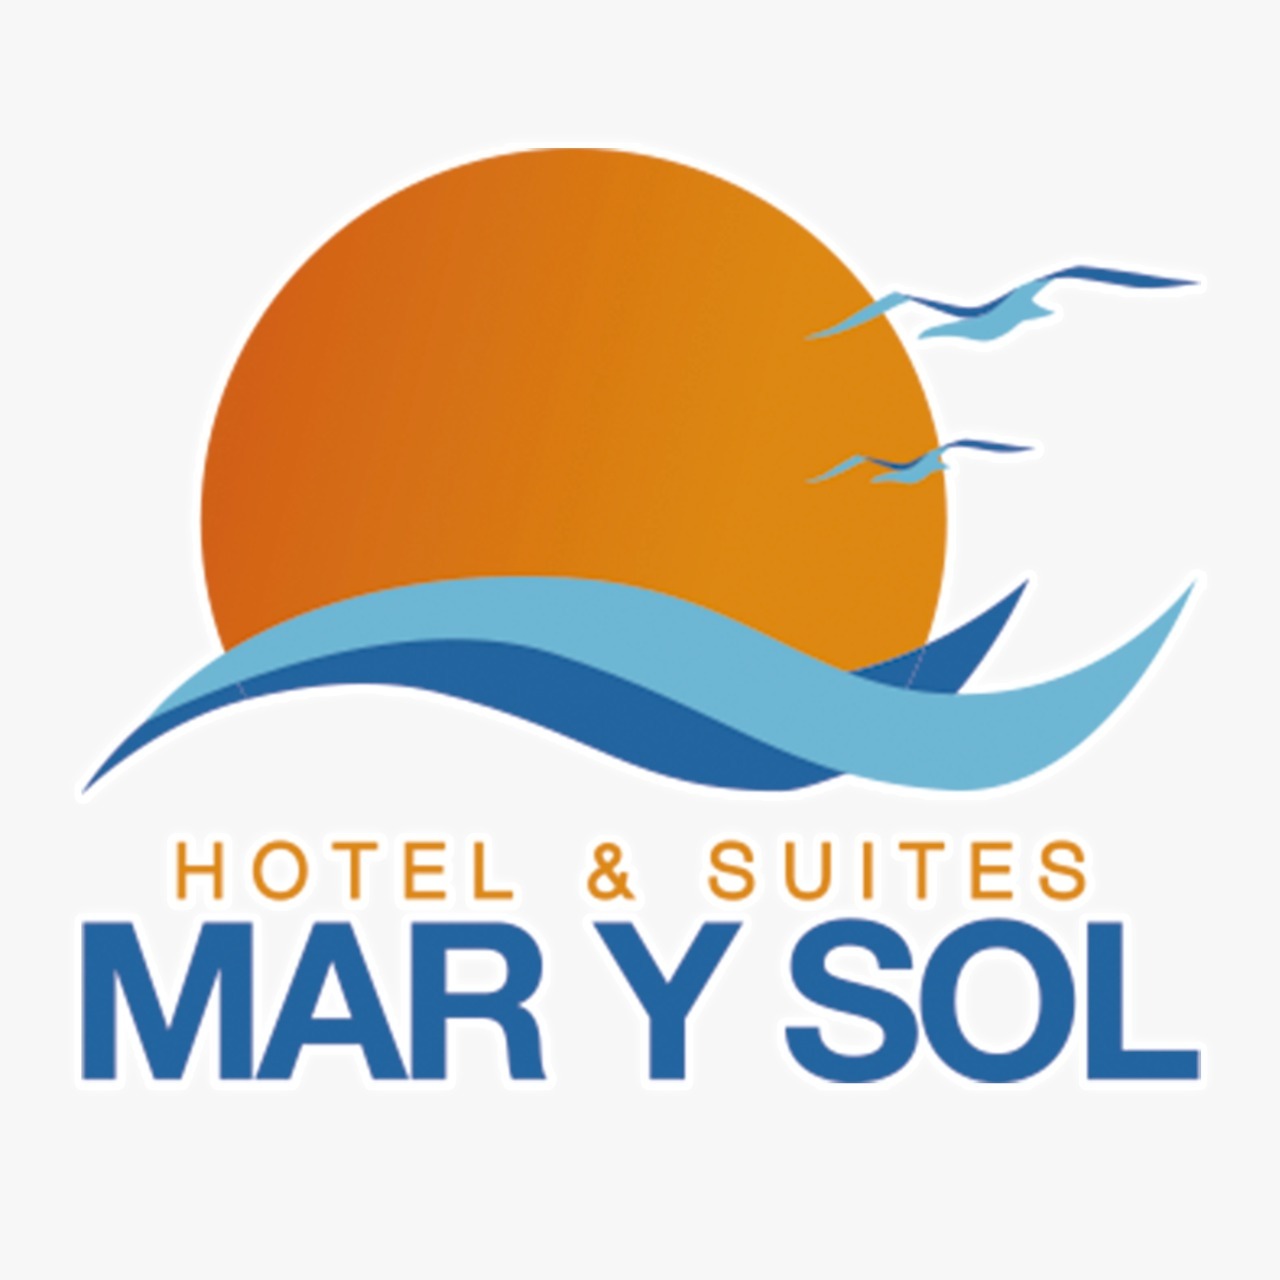 Hotel & Suites Marysol